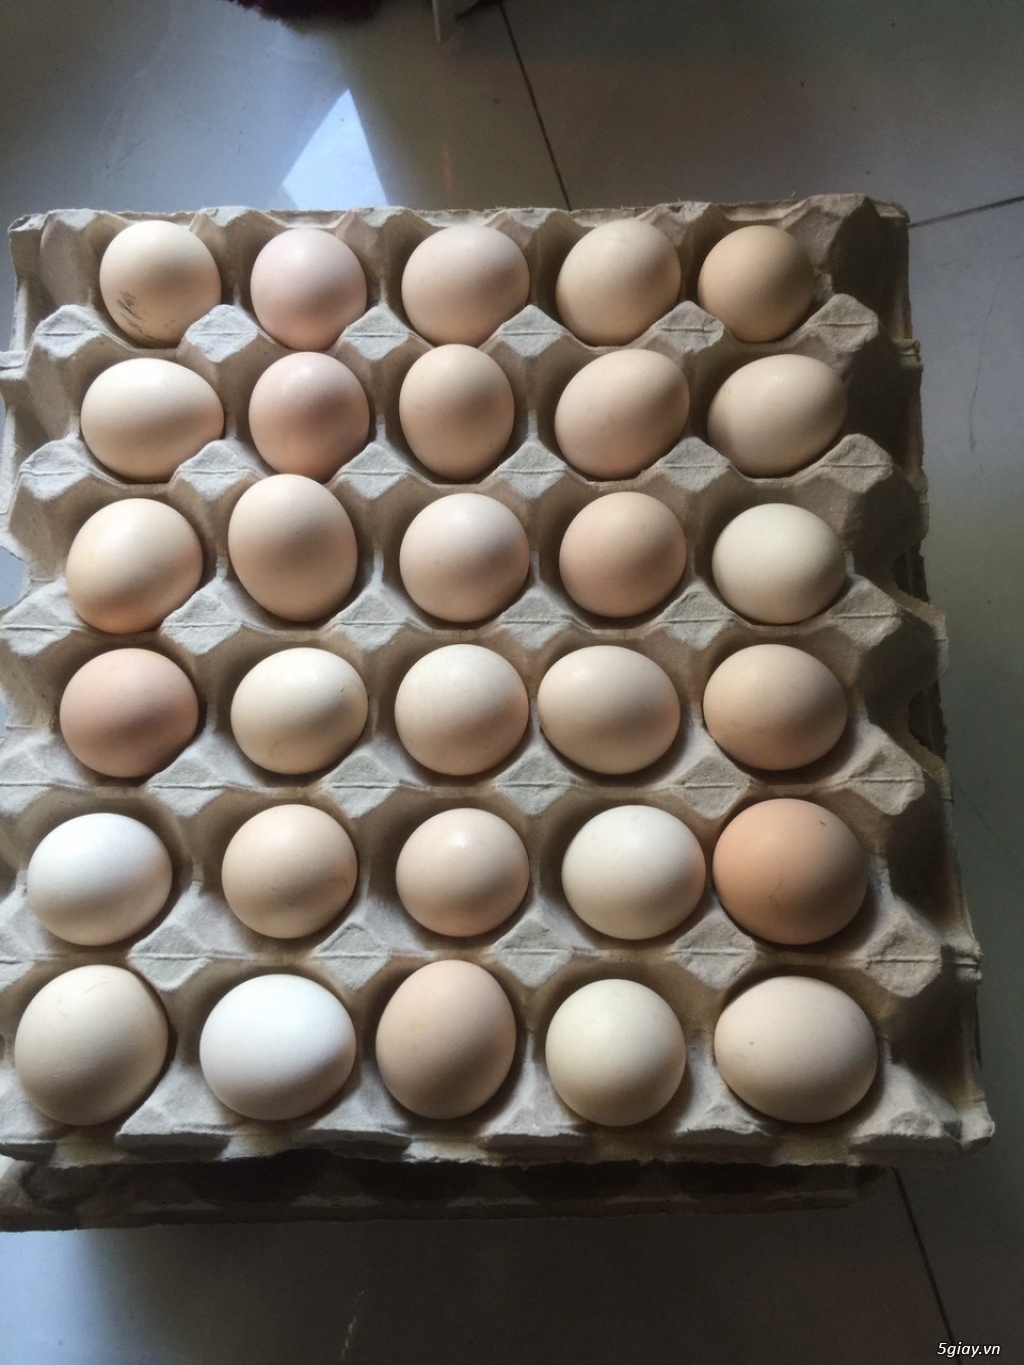 trang trại cần tìm đại lý, nhà phân phối trứng gà ác trên toàn quốc